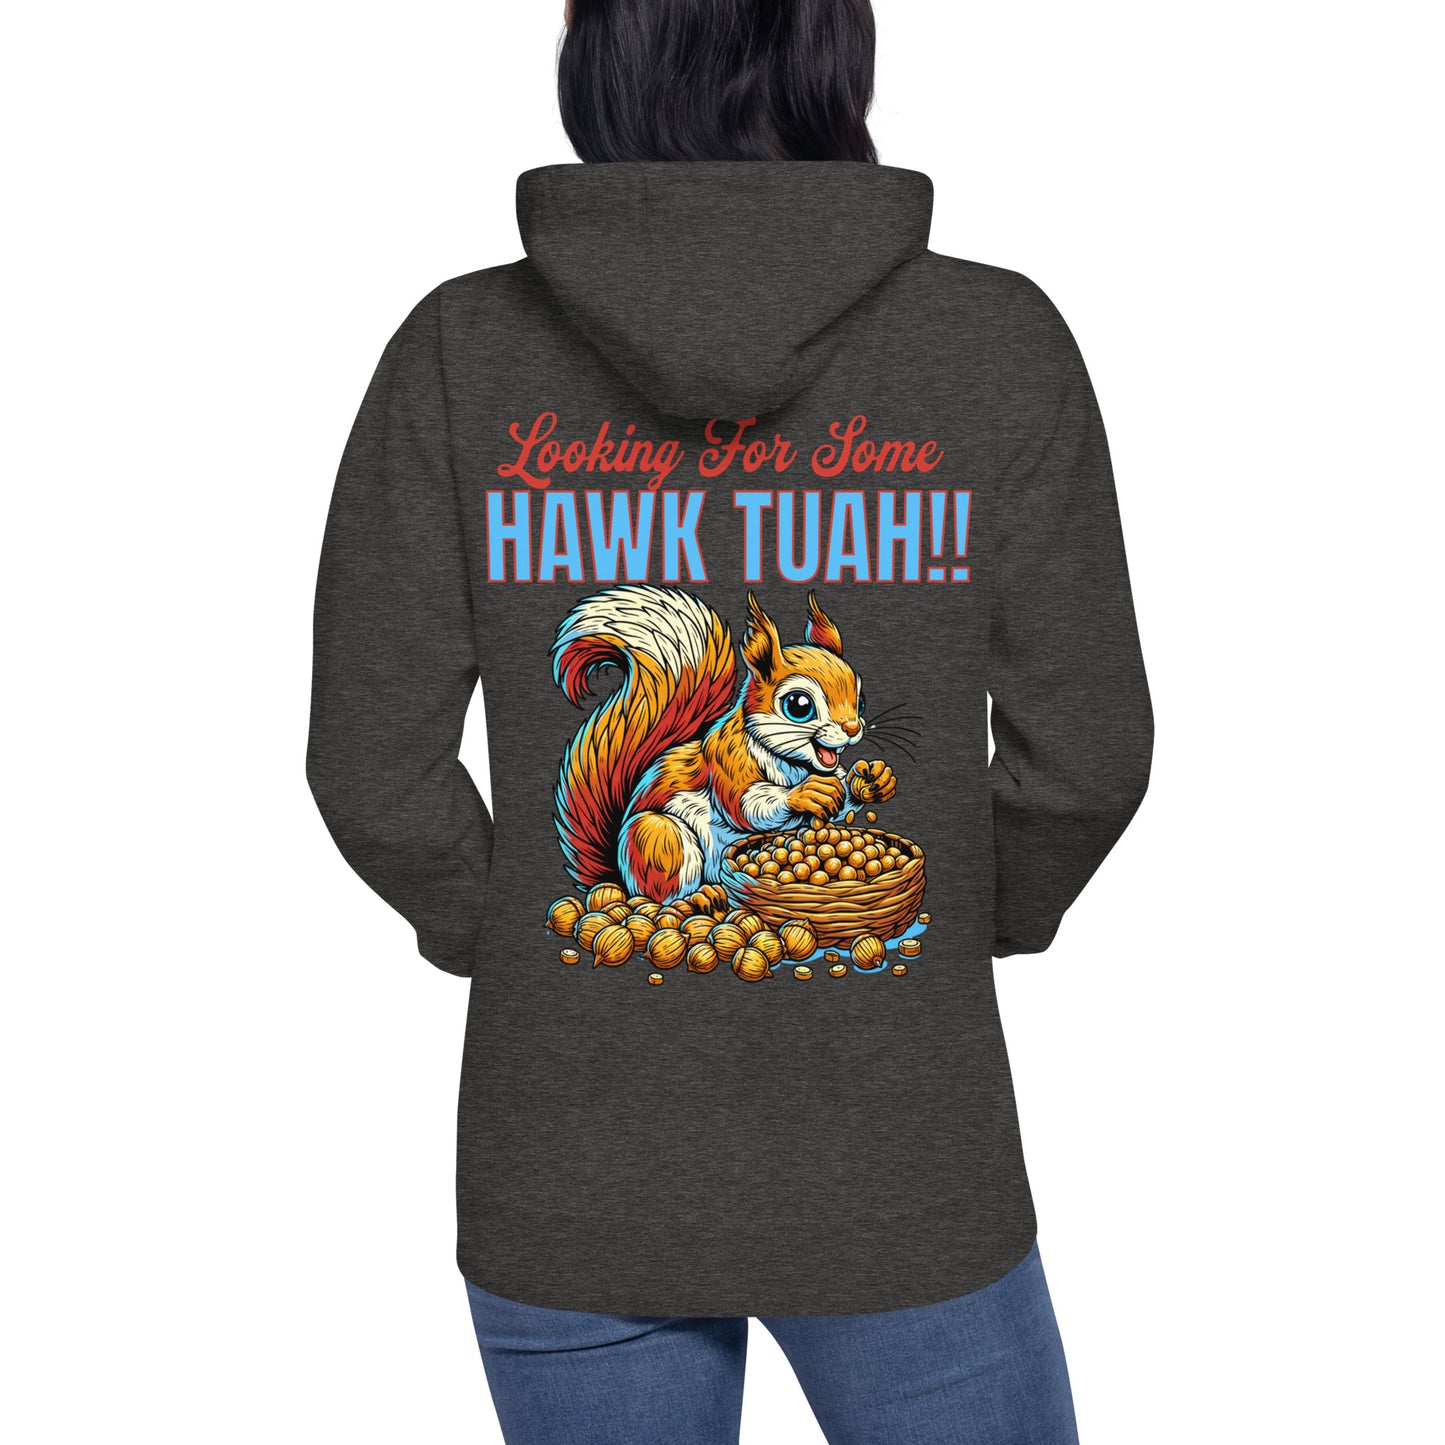 hawk tuah!! custom hoodie funny viral novelty hoodie